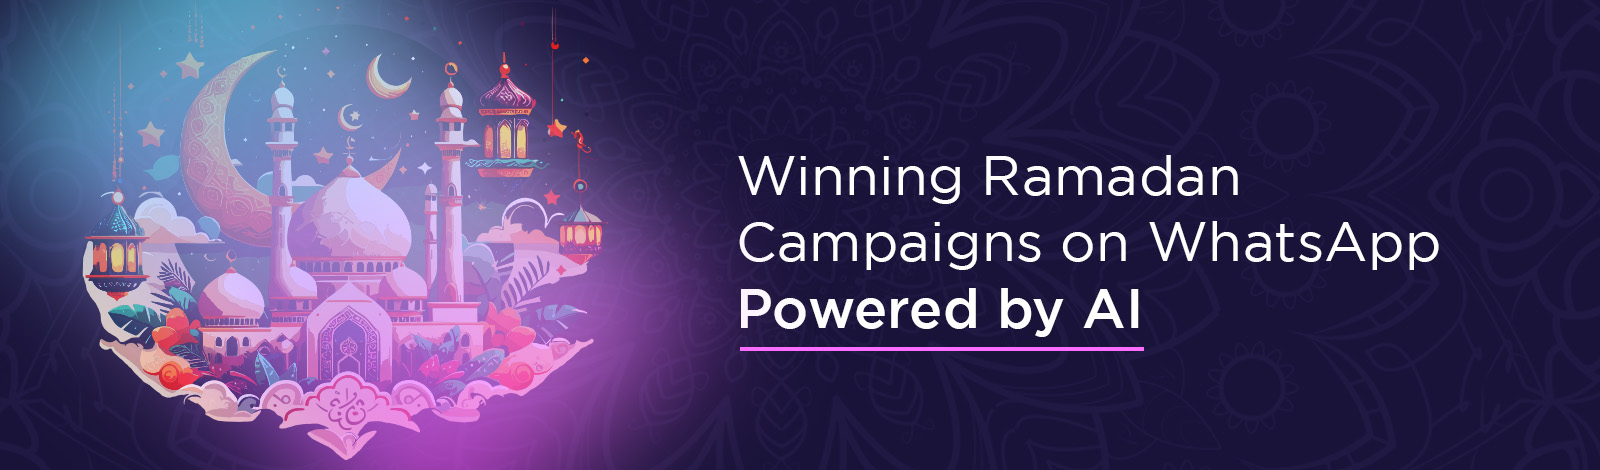 Winning Ramadan Campaigns on WhatsApp Powered by AI